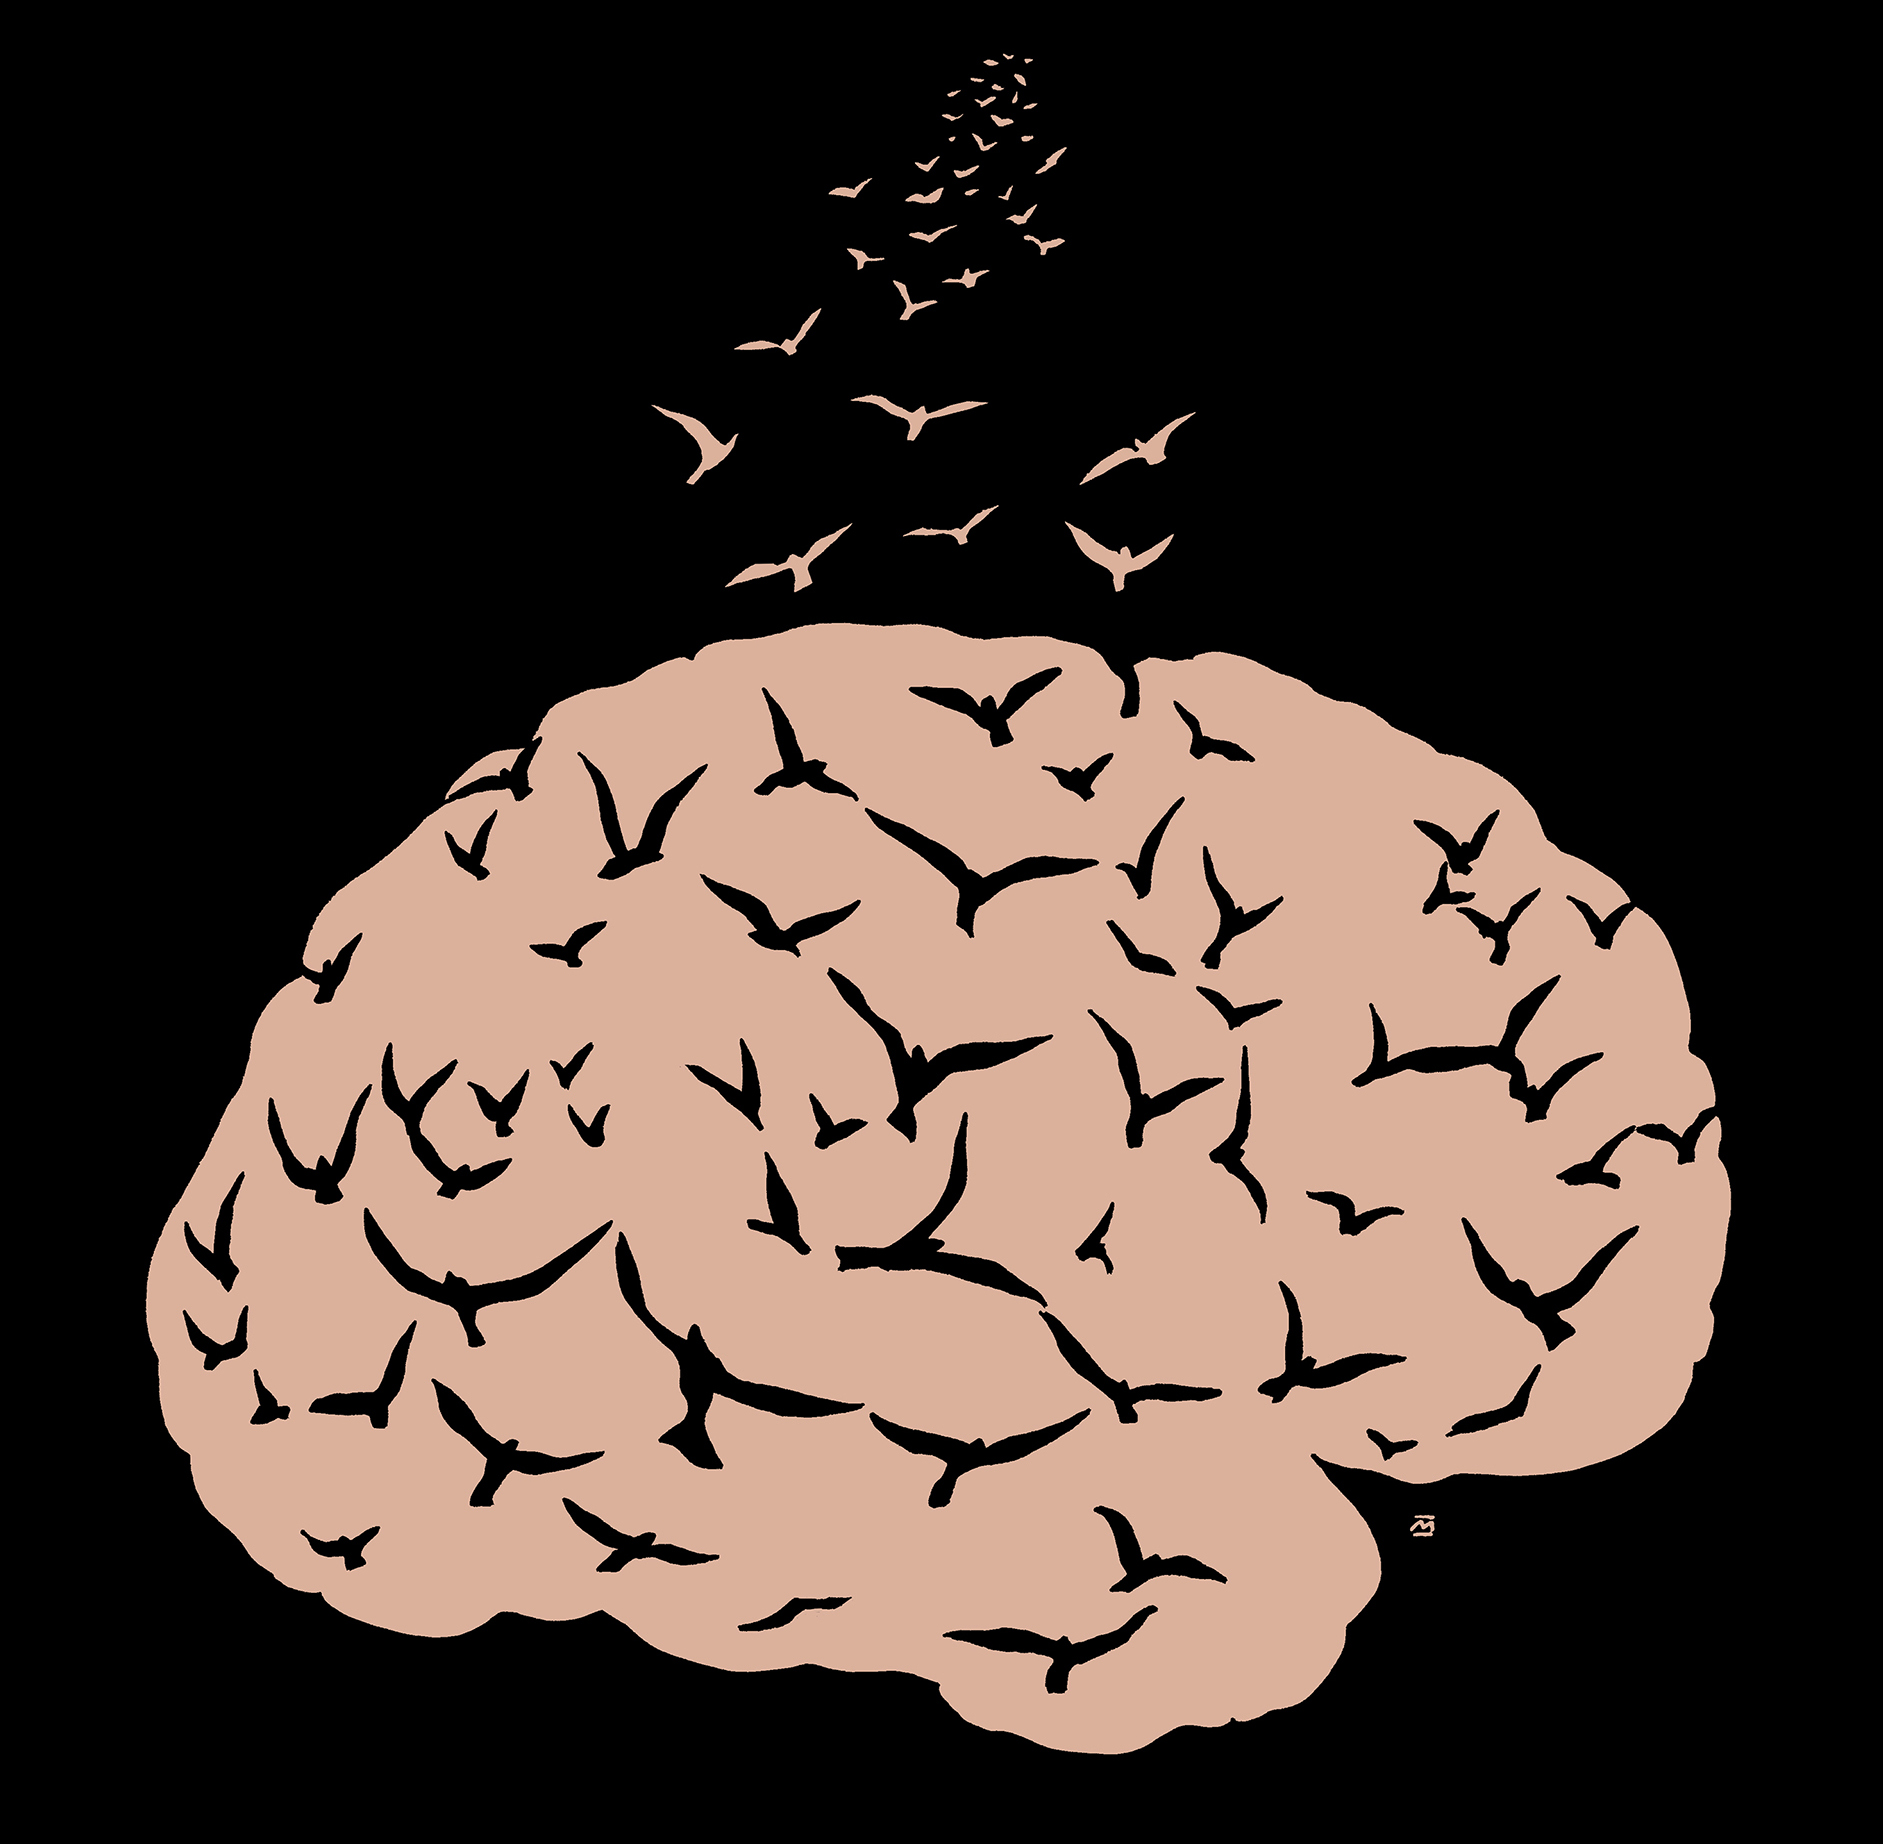 Hjerneflukt/Brain drain